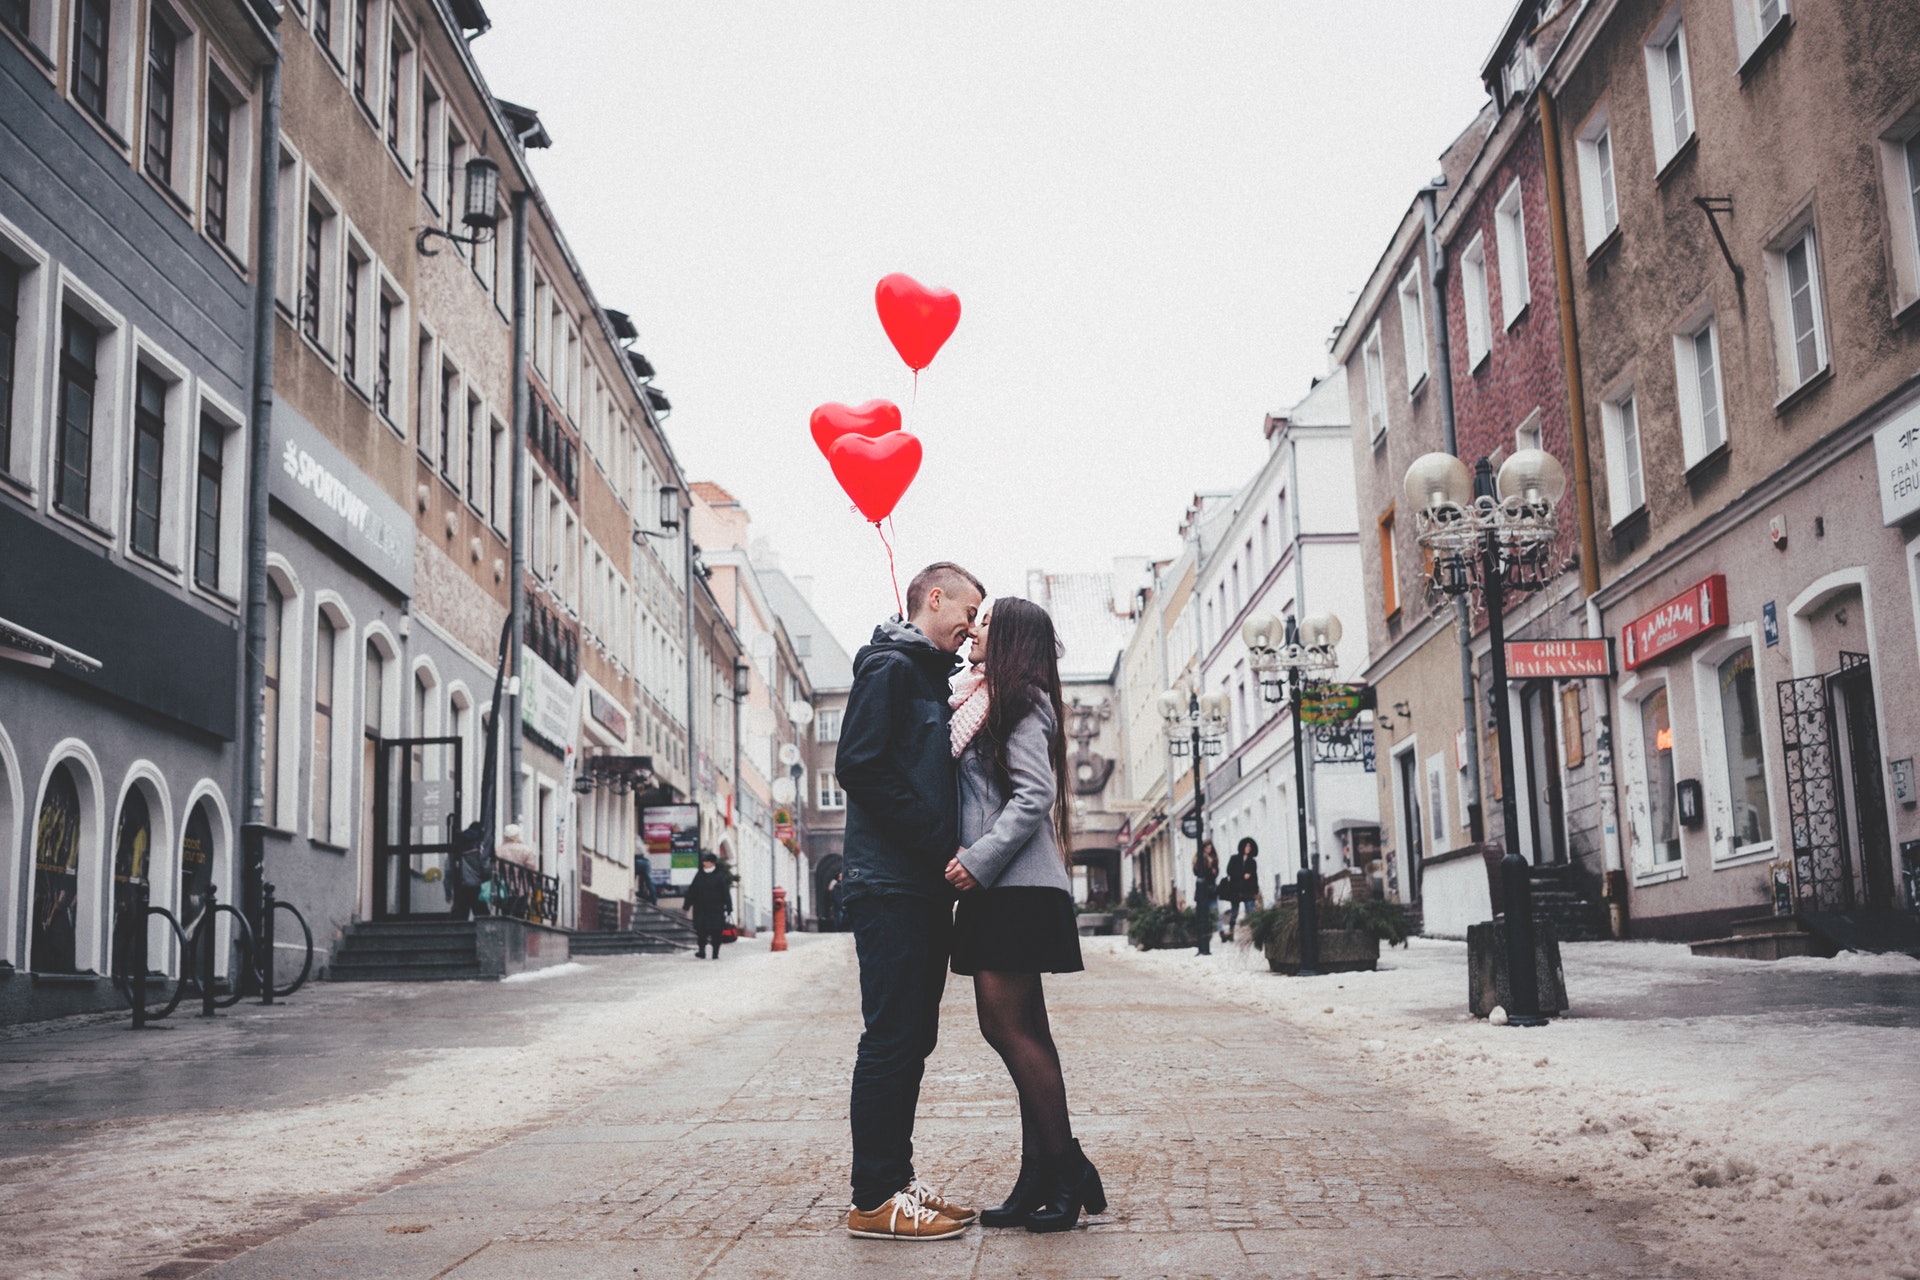 La Saint-Valentin : retour sur les sources de cet évènement des amoureux